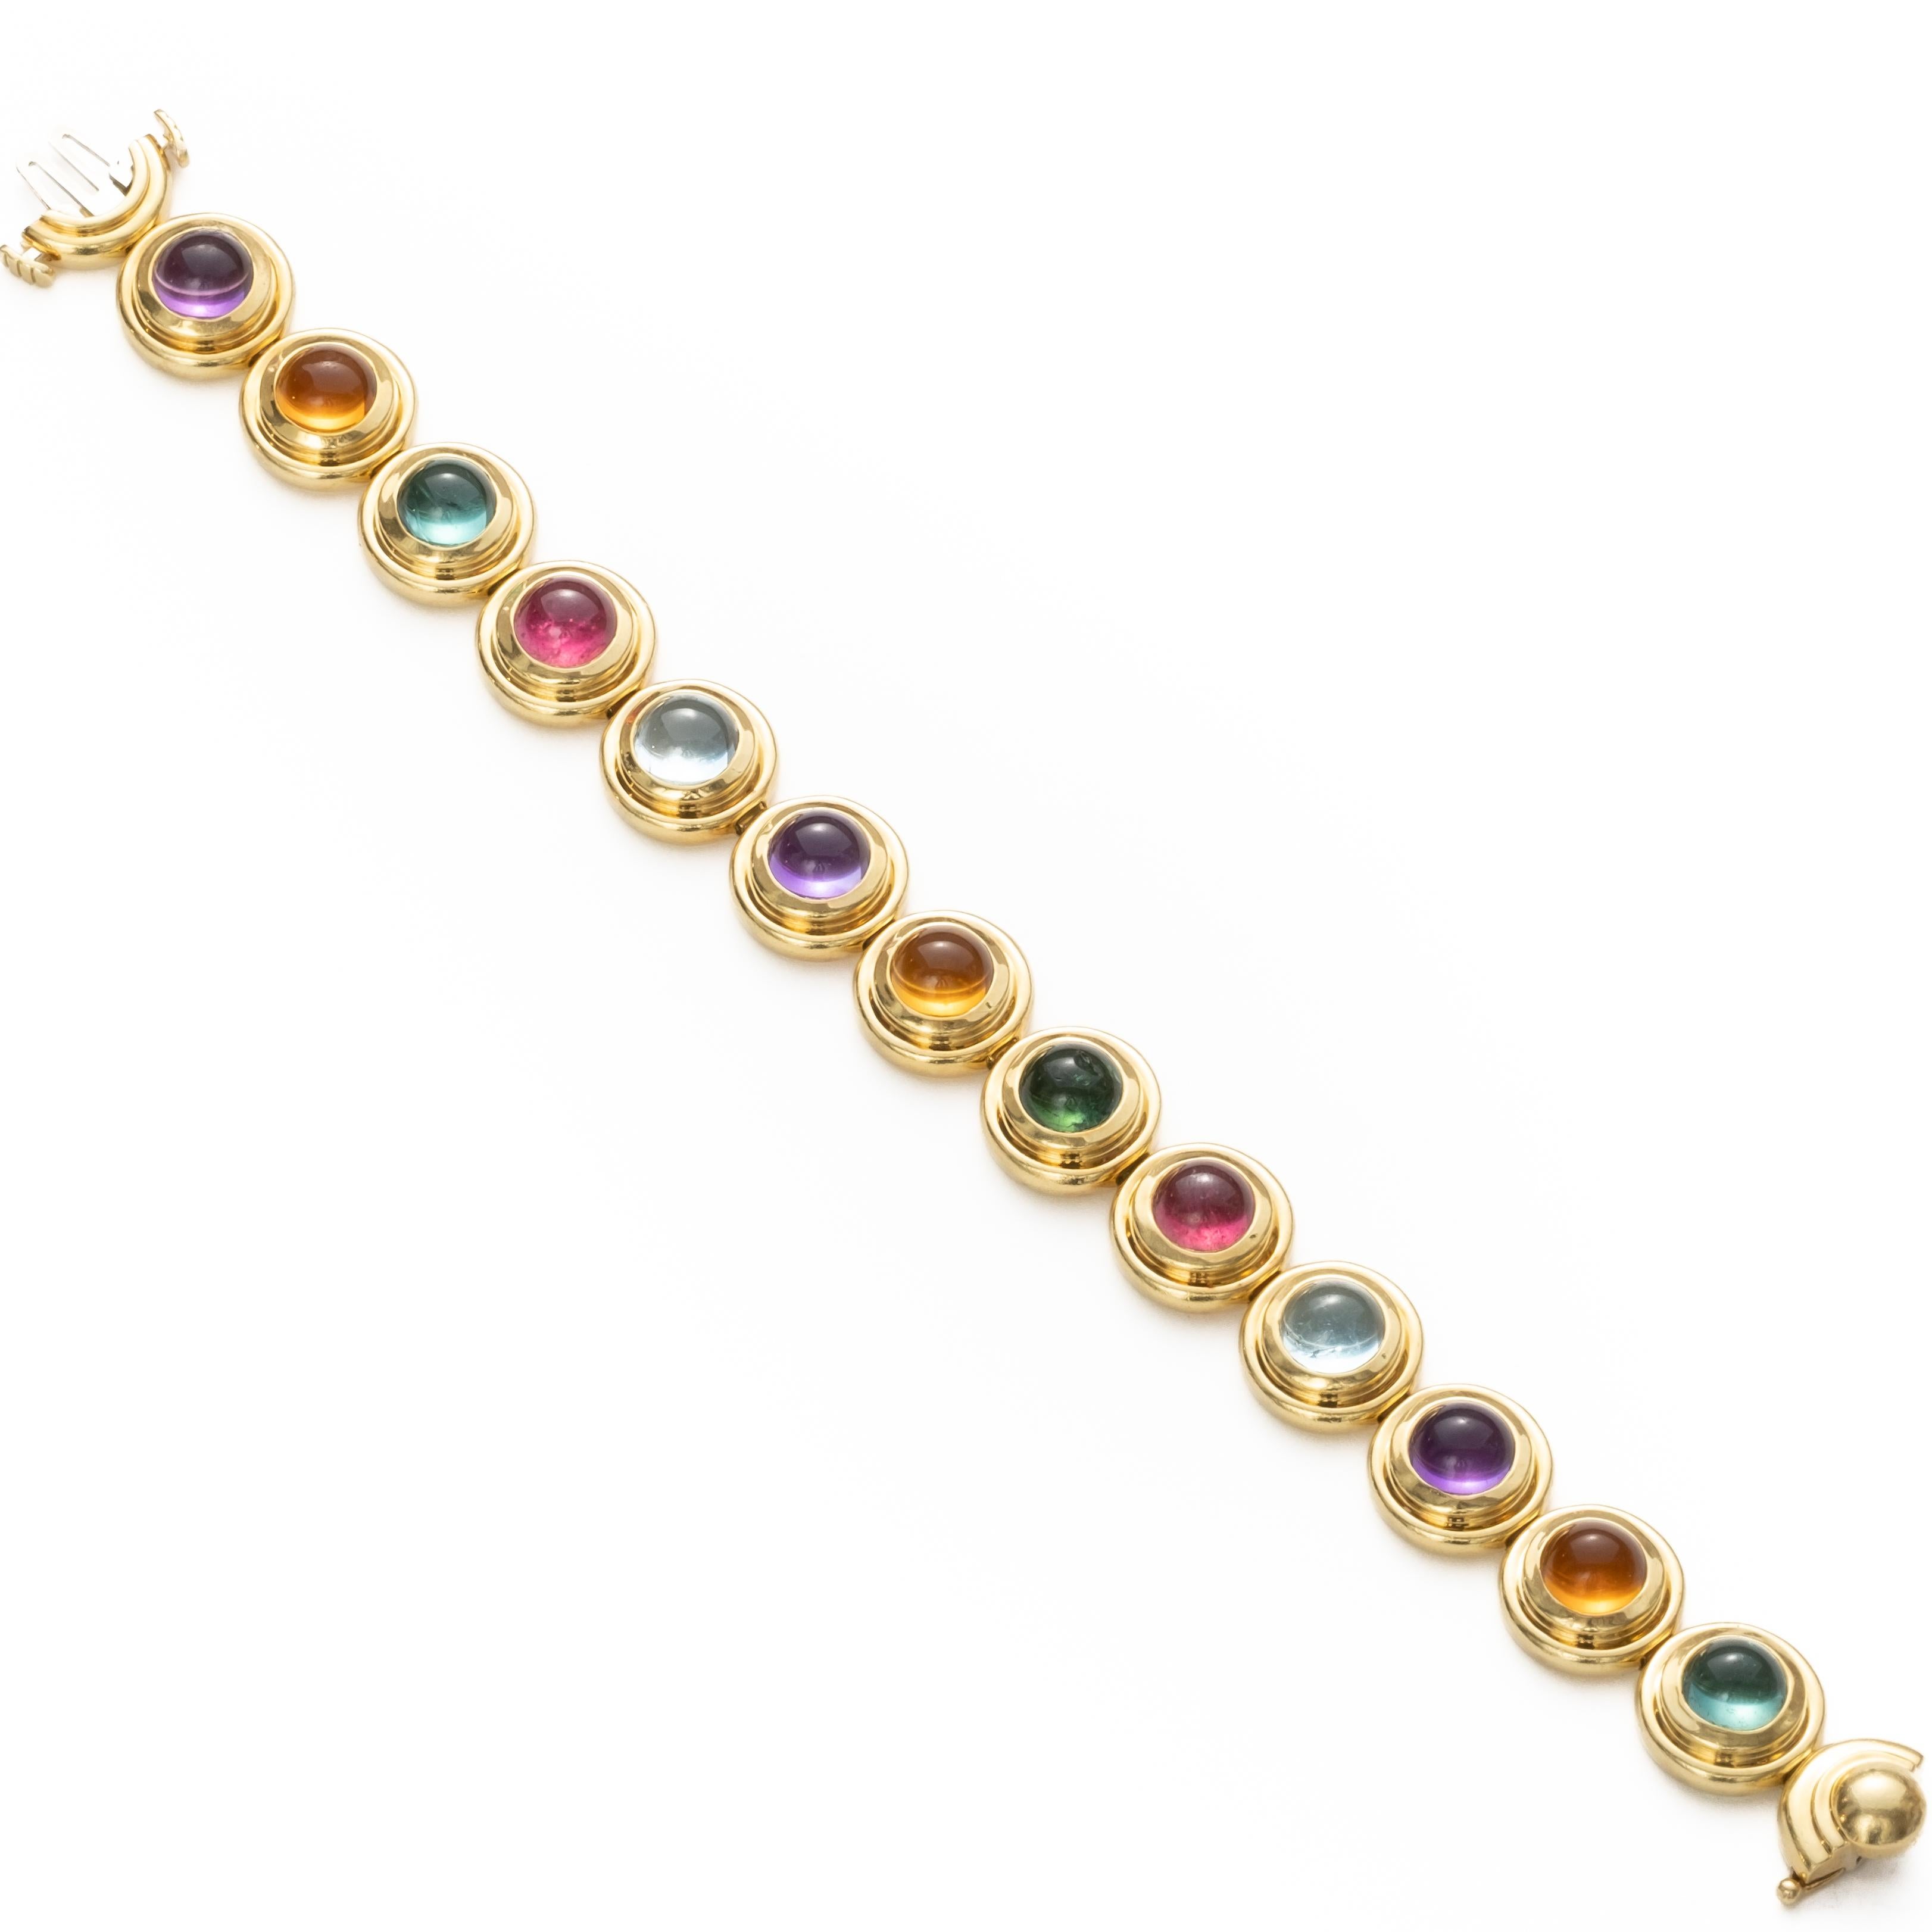 Paloma Picasso for Tiffany & Co signed bracelet 18k Gold and Multi-Gem Bracelet, measures  7.25